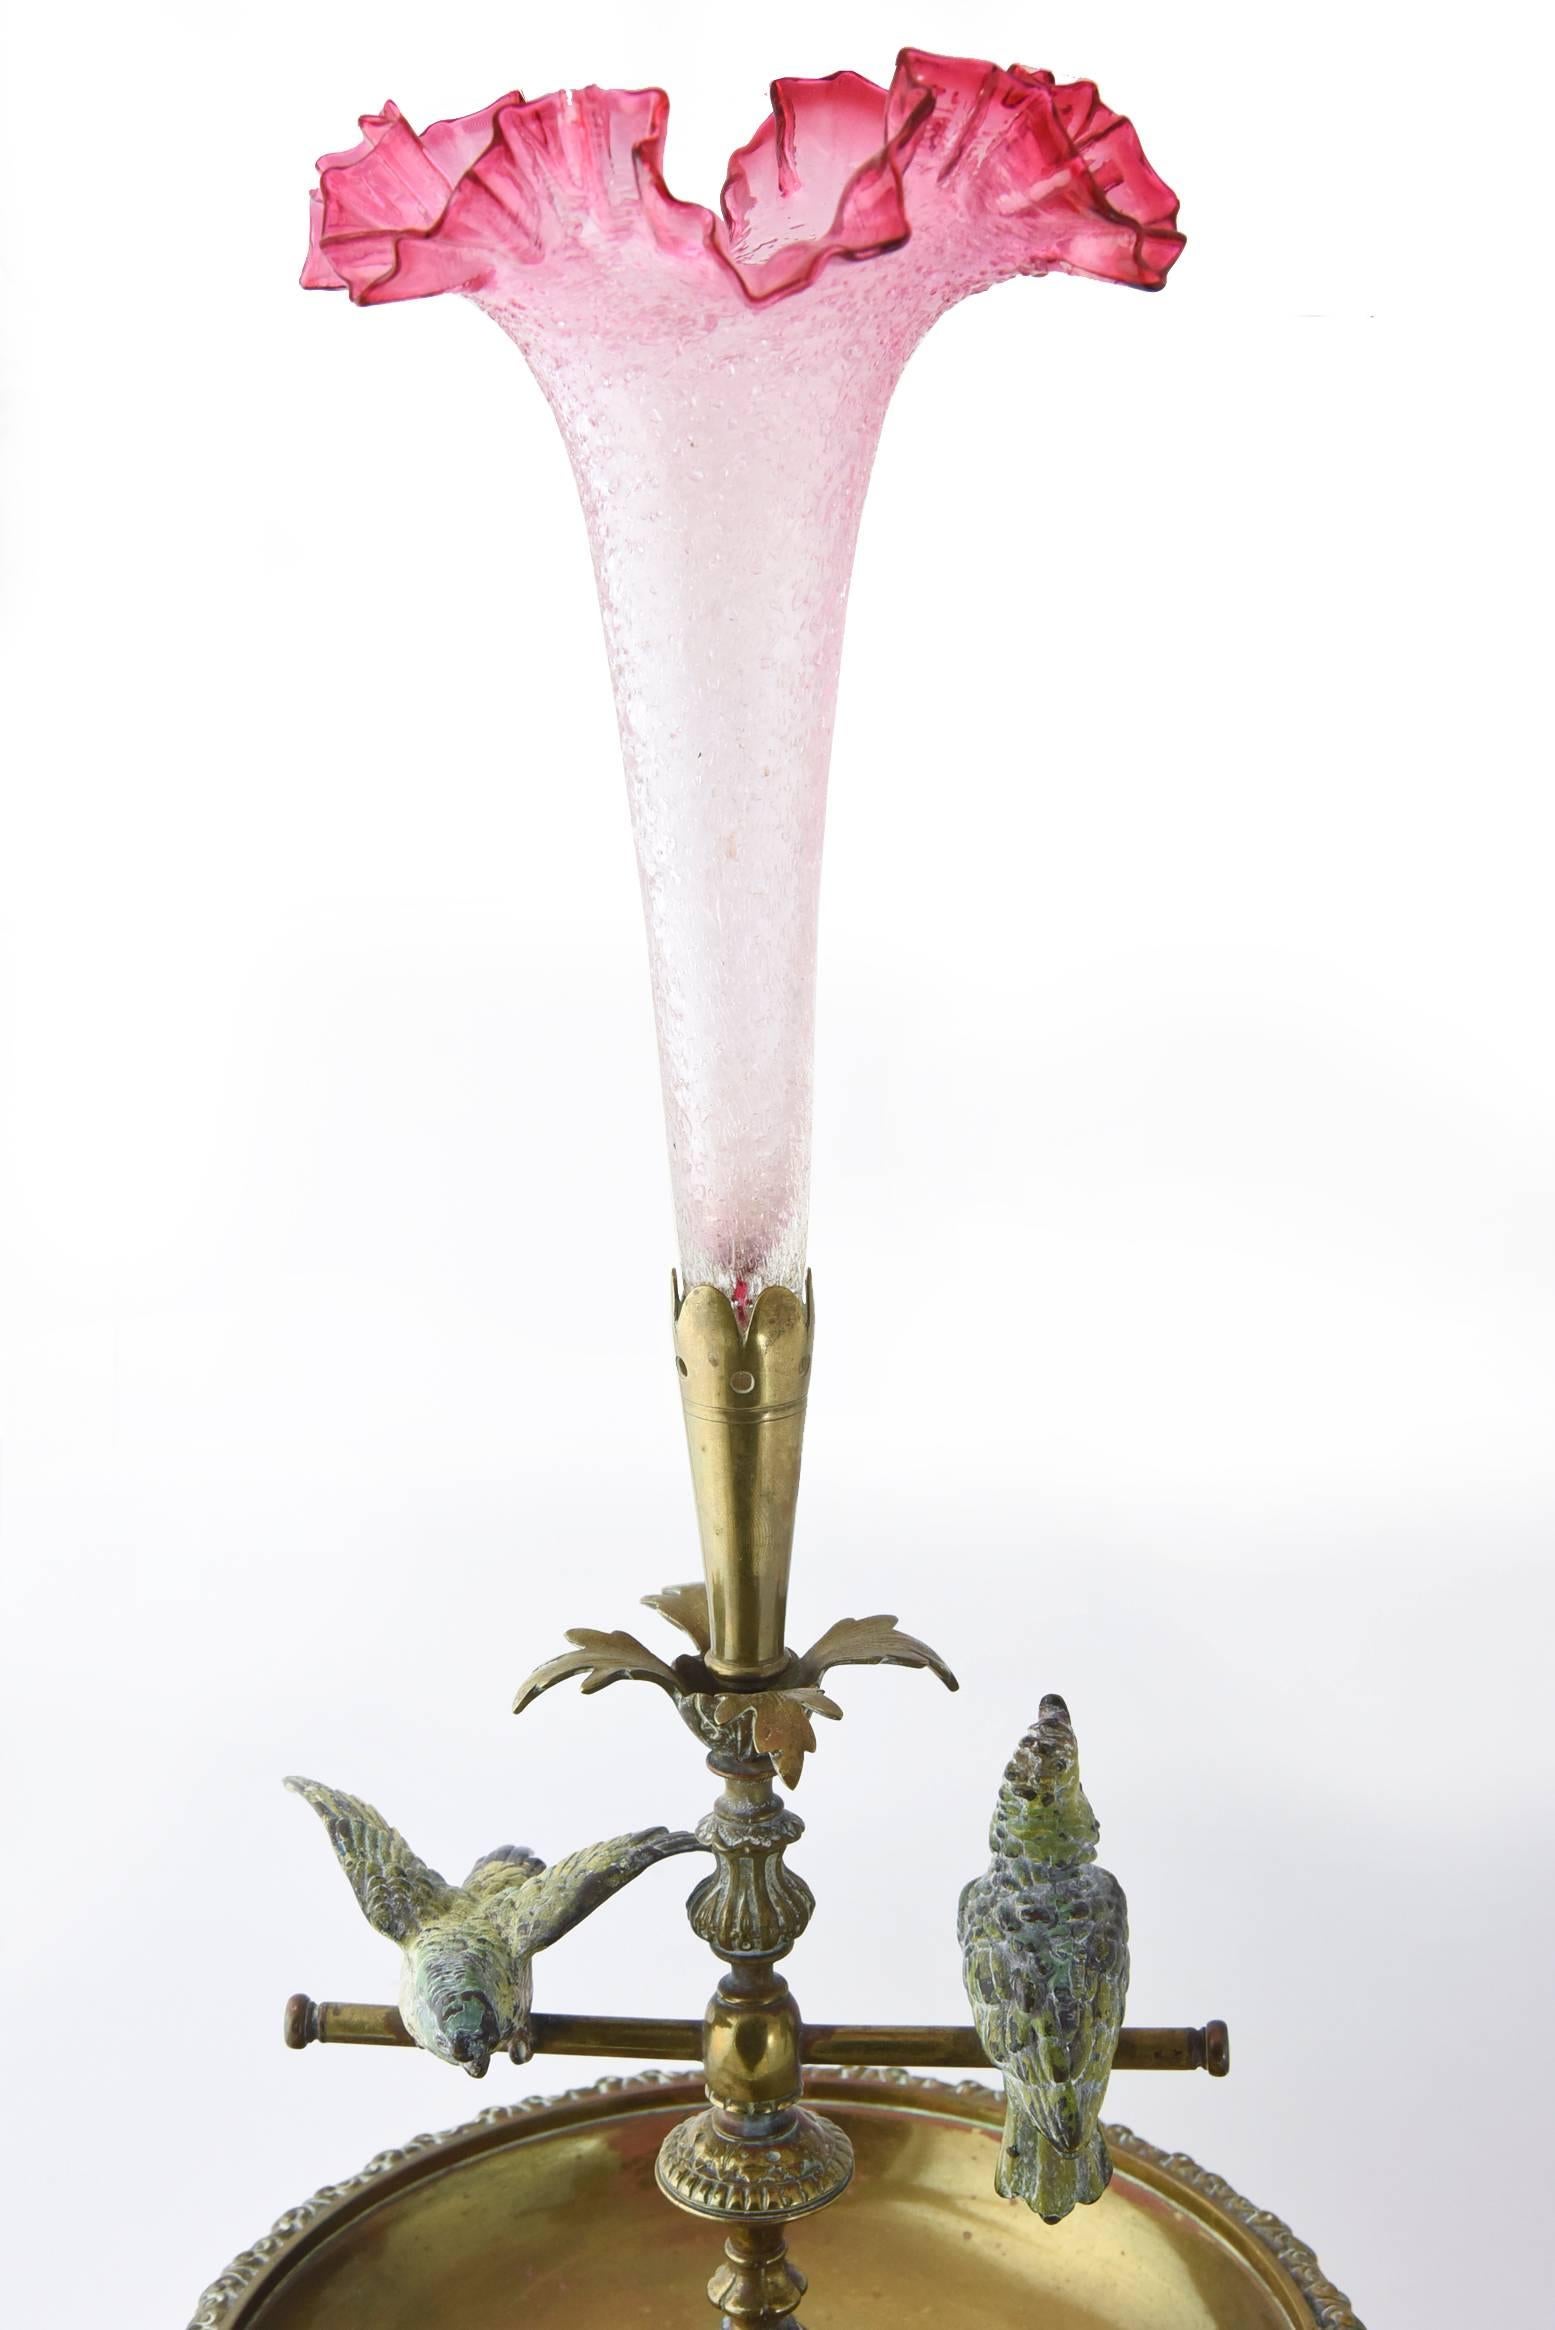 Epergne Tafelaufsatz aus dem frühen 20. Jahrhundert mit zwei kaltgemalten Nymphensittichen aus Wiener Bronze auf Wippschaukeln und einer schönen Tulpenvase aus rosafarbenem Kunstglas mit Craquelé. Das Stück ist unsigniert.